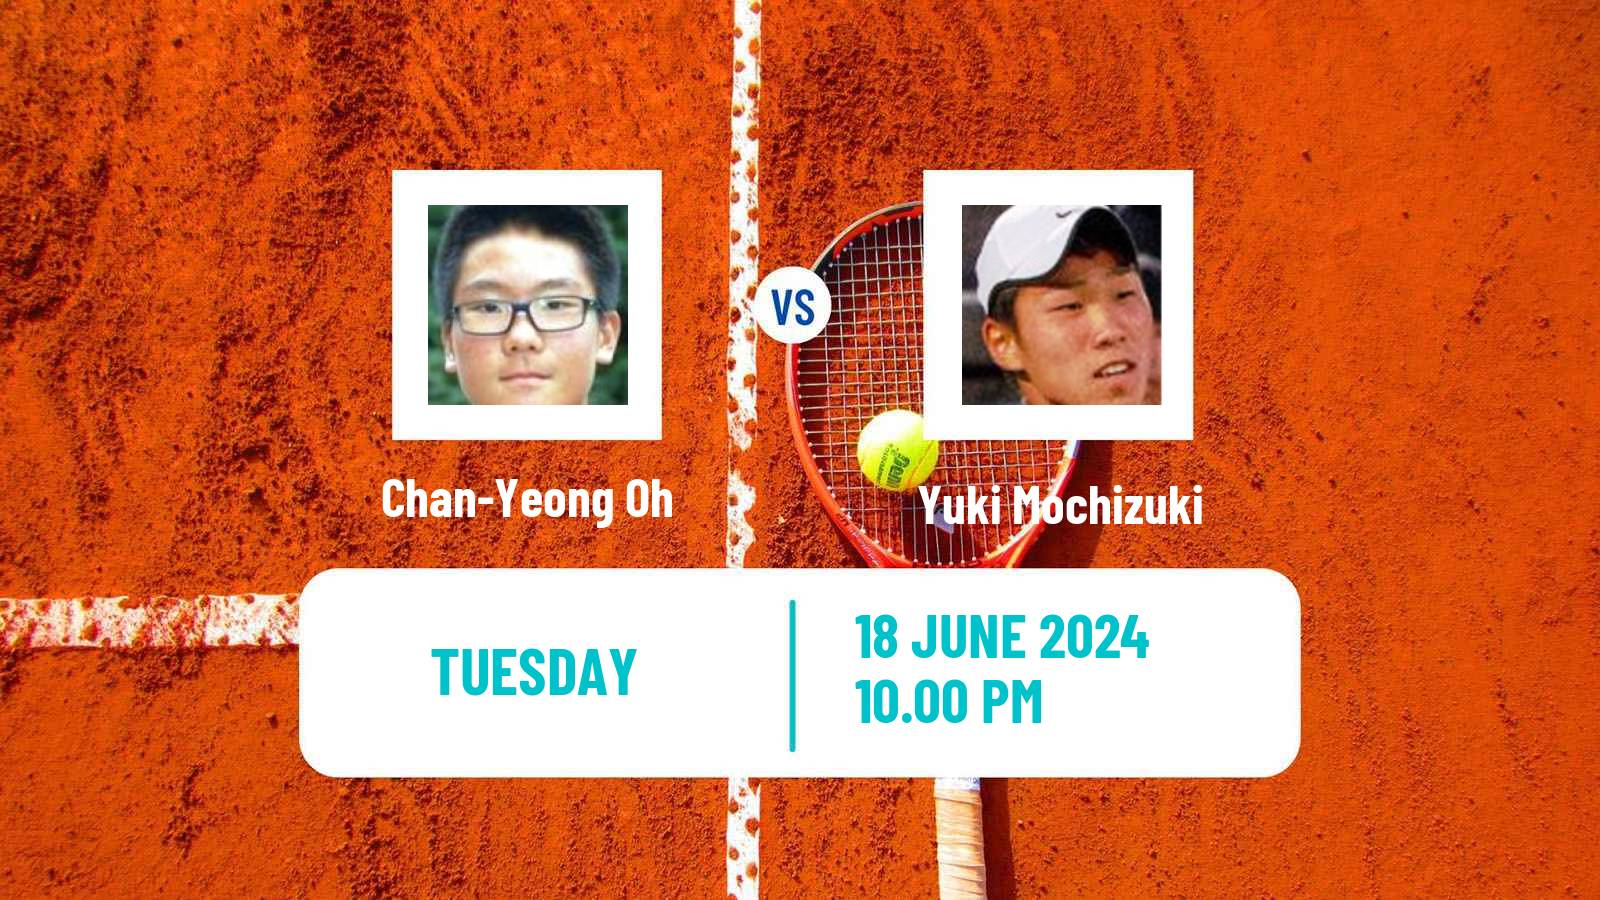 Tennis ITF M25 Changwon Men Chan-Yeong Oh - Yuki Mochizuki